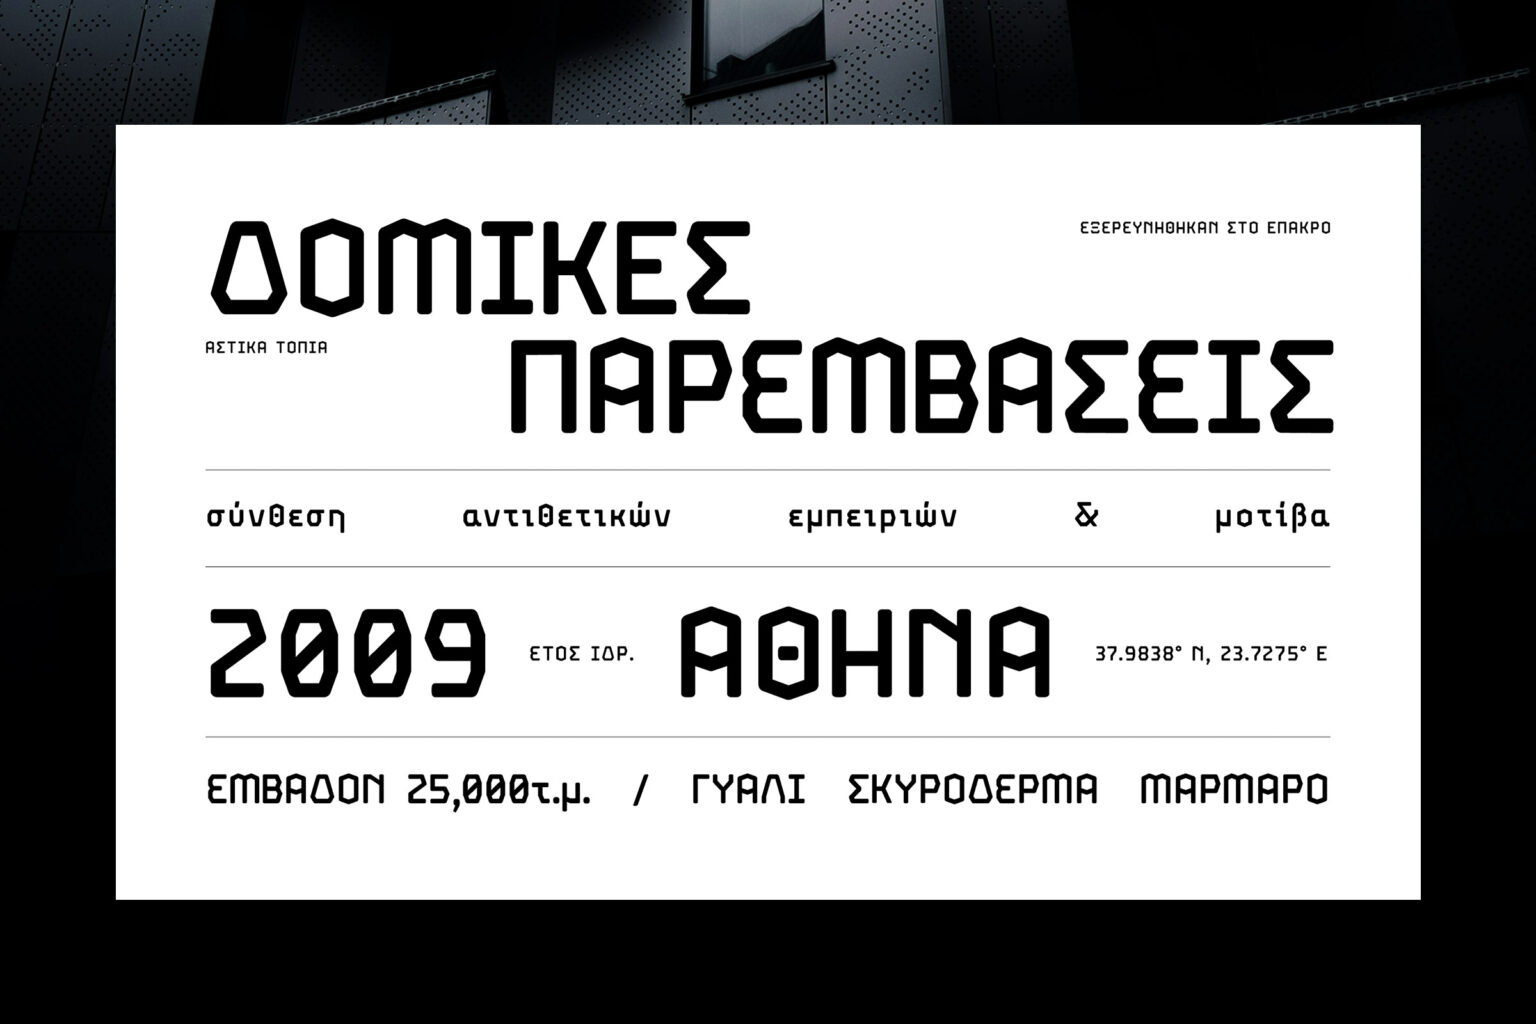 ep typeface branding thumbs kommigraphics